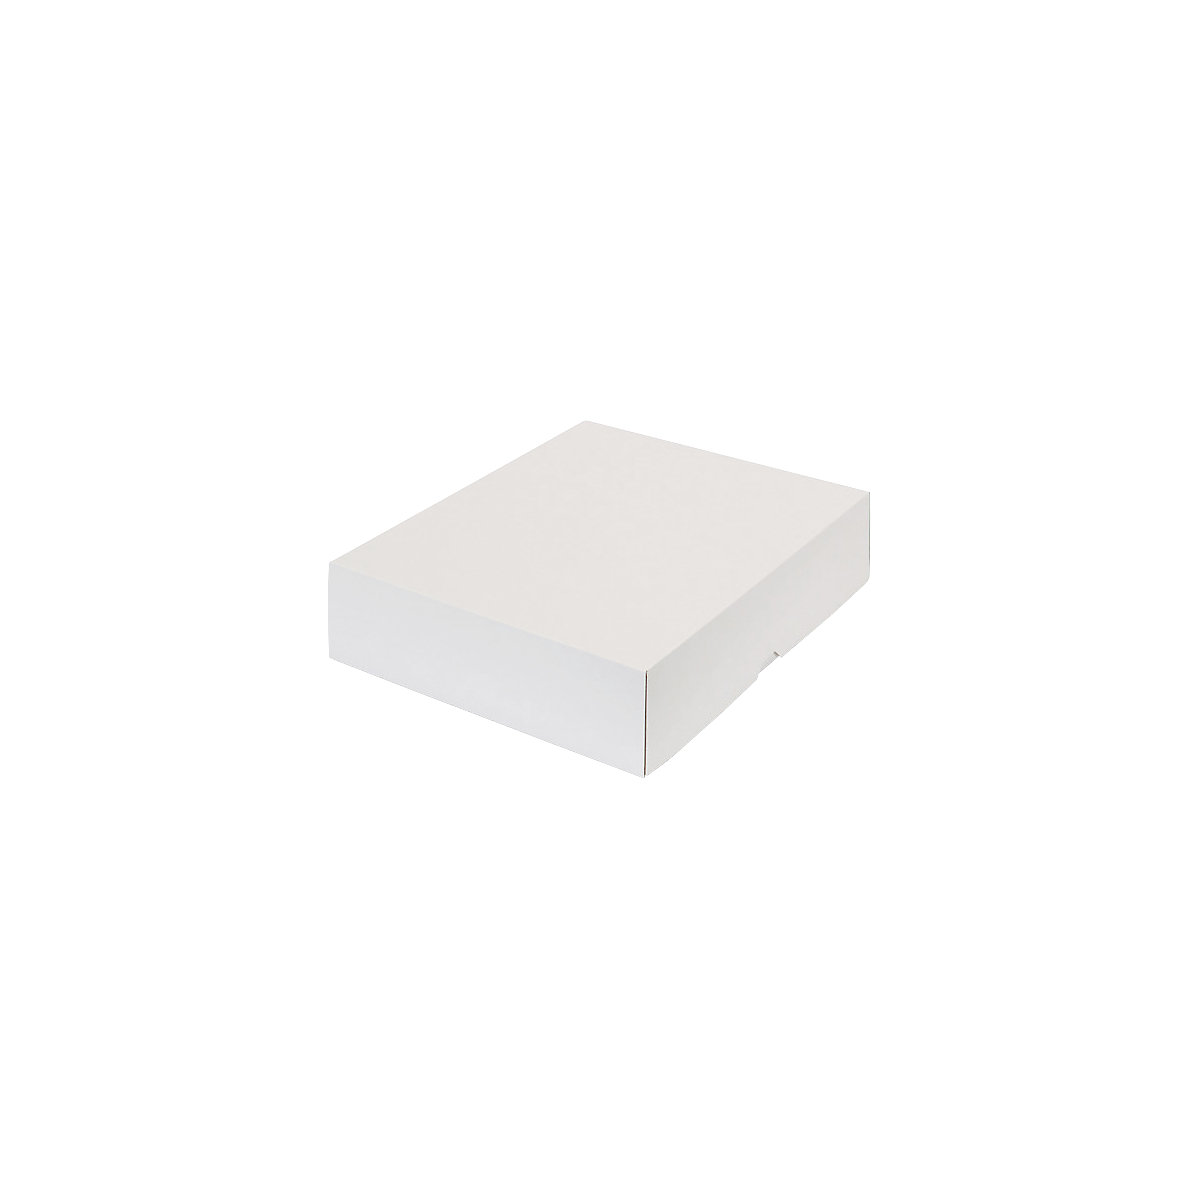 Stülpdeckelkarton, zweiteilig, Innenmaße 355 x 275 x 80 mm, B4, weiß, ab 12 Stk-30